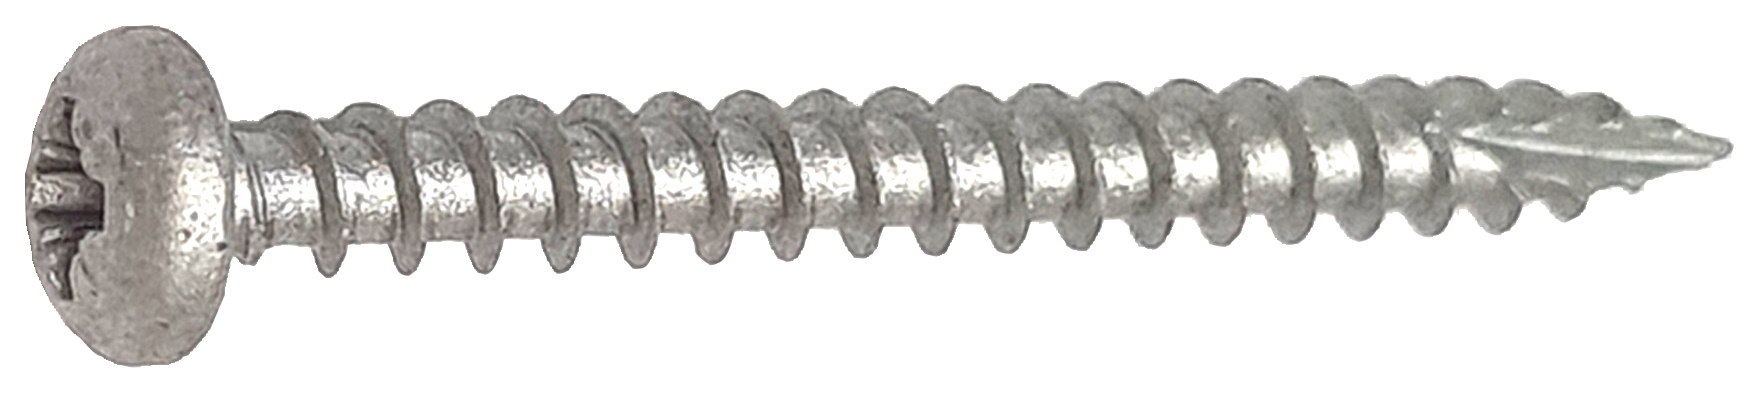 DuraPost Ruspert Silver Pan Head Timber Screws - 4 x 40mm - Pack of 10